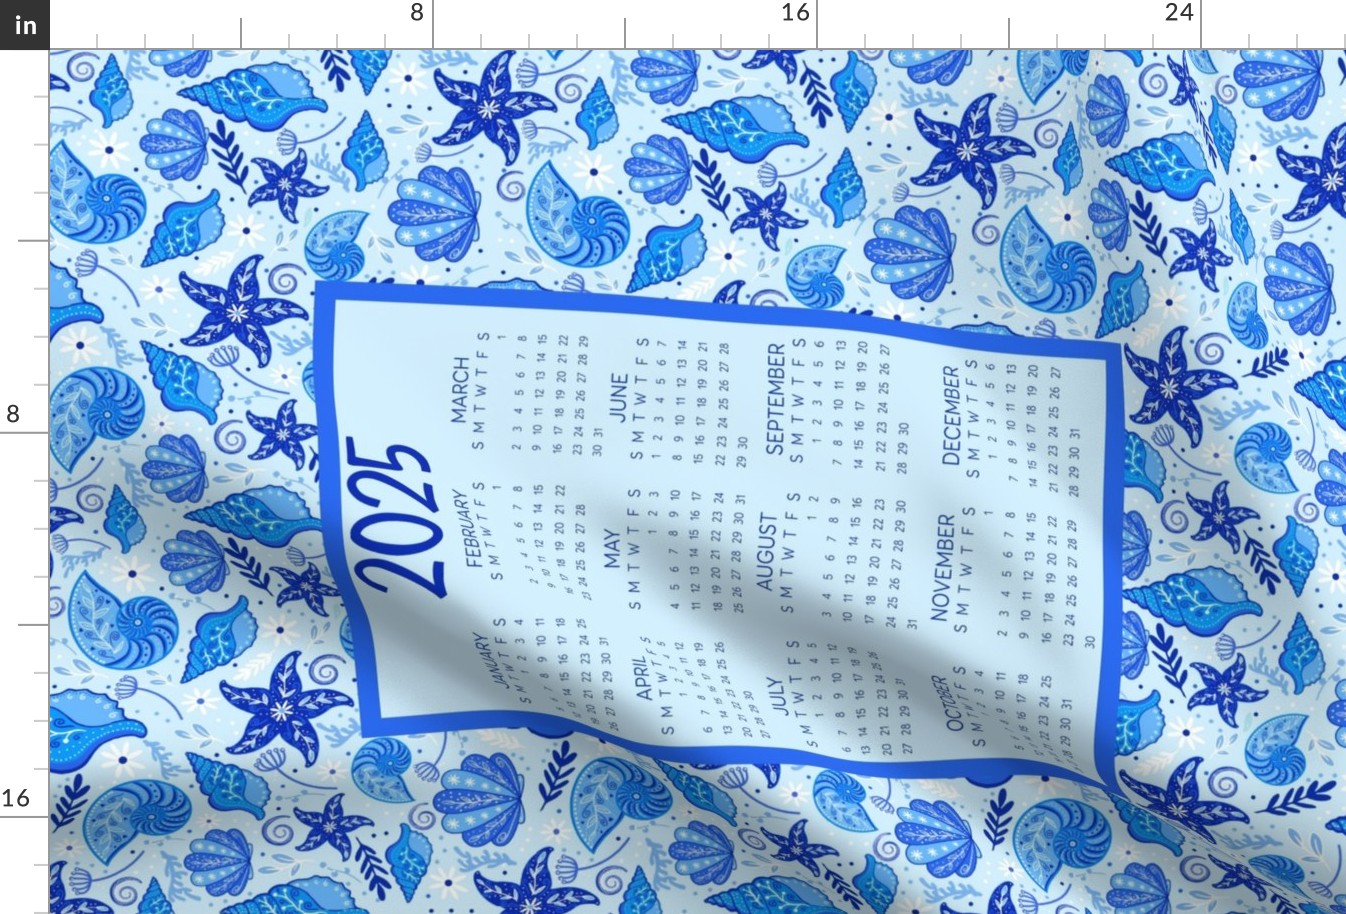 2025 Calendar Wall Hanging Fat Quarter Tea Towel Size Painted Blue Sea Shells